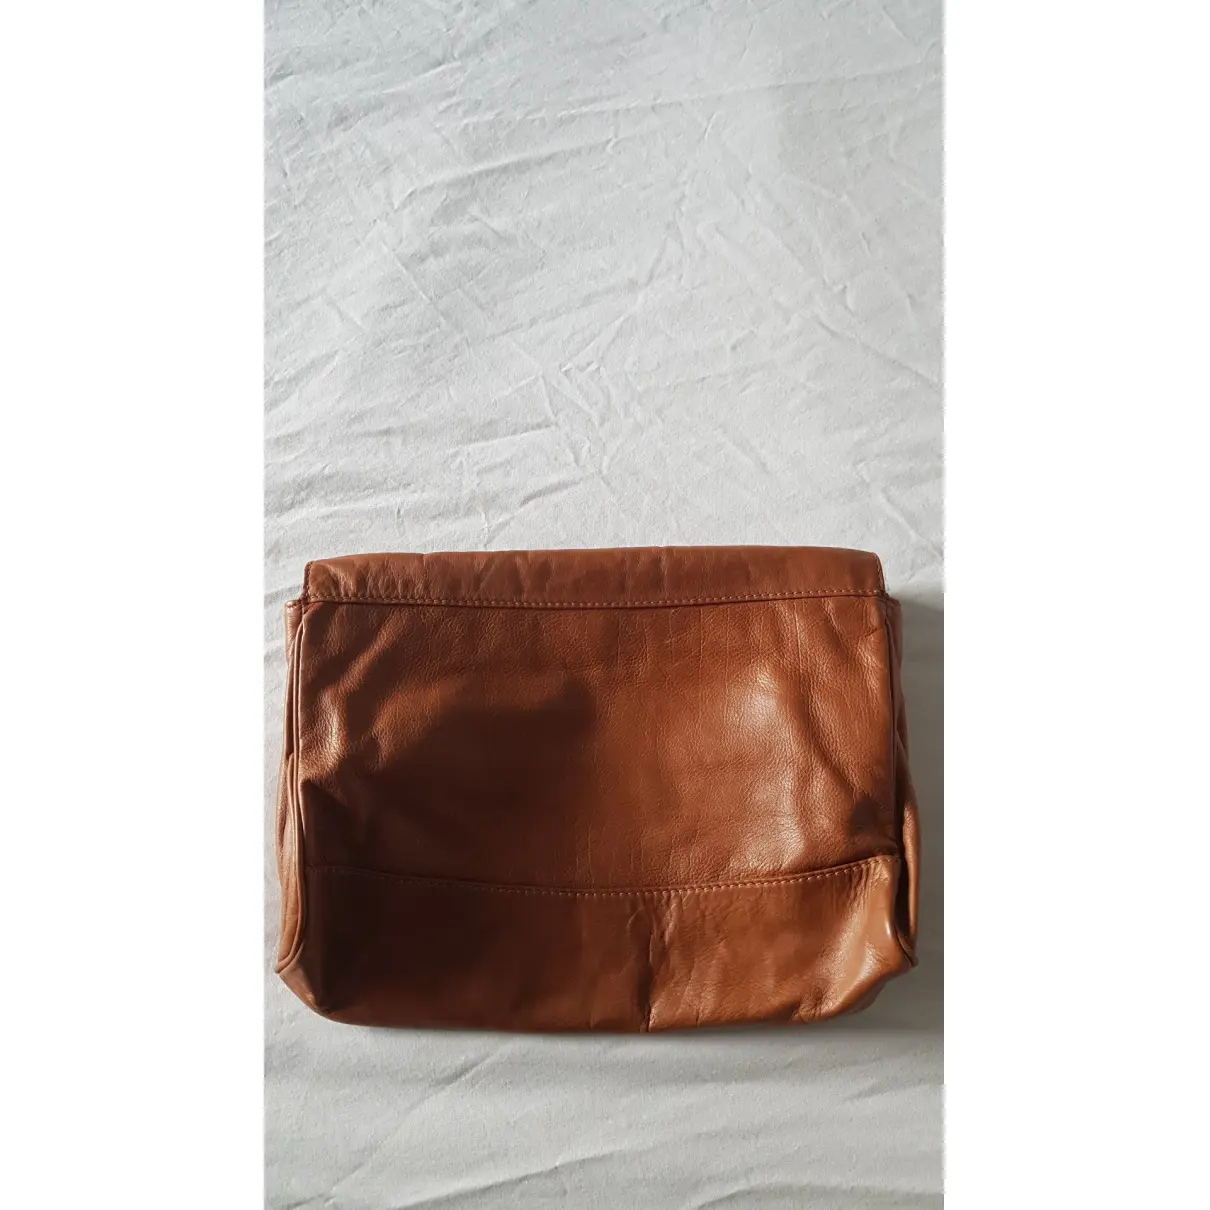 Buy Vanessa Bruno Leather clutch bag online